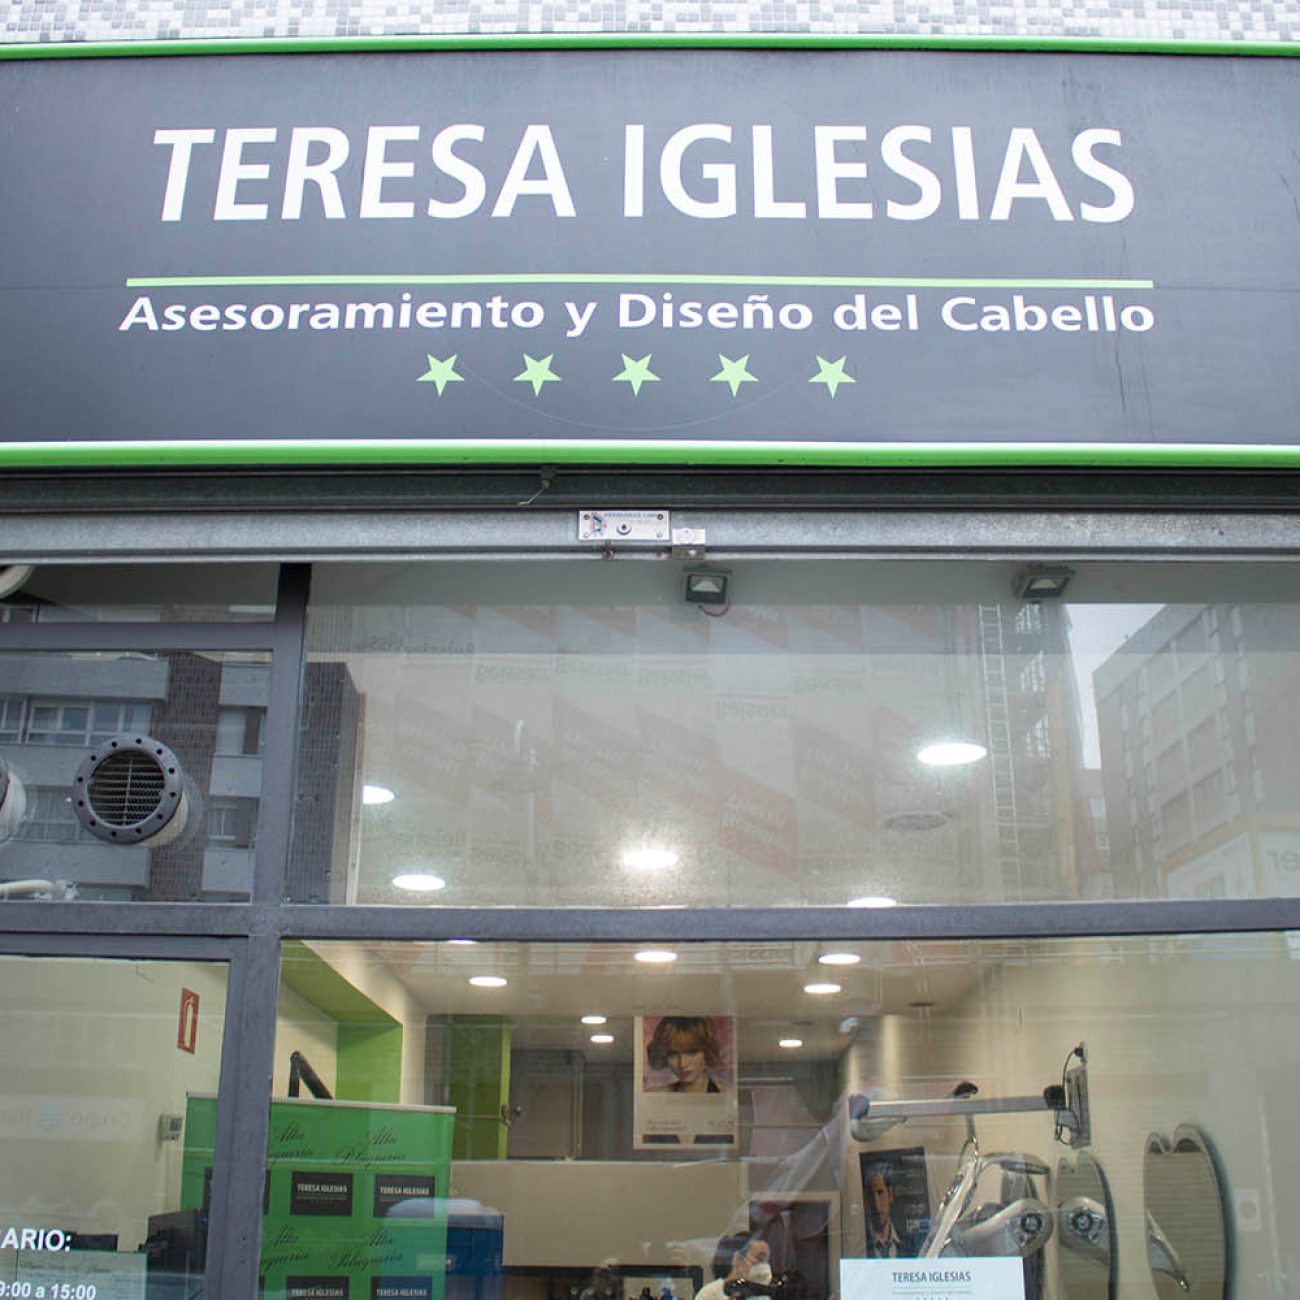 Teresa Iglesias peluquería, asesoramiento y diseño del cabello